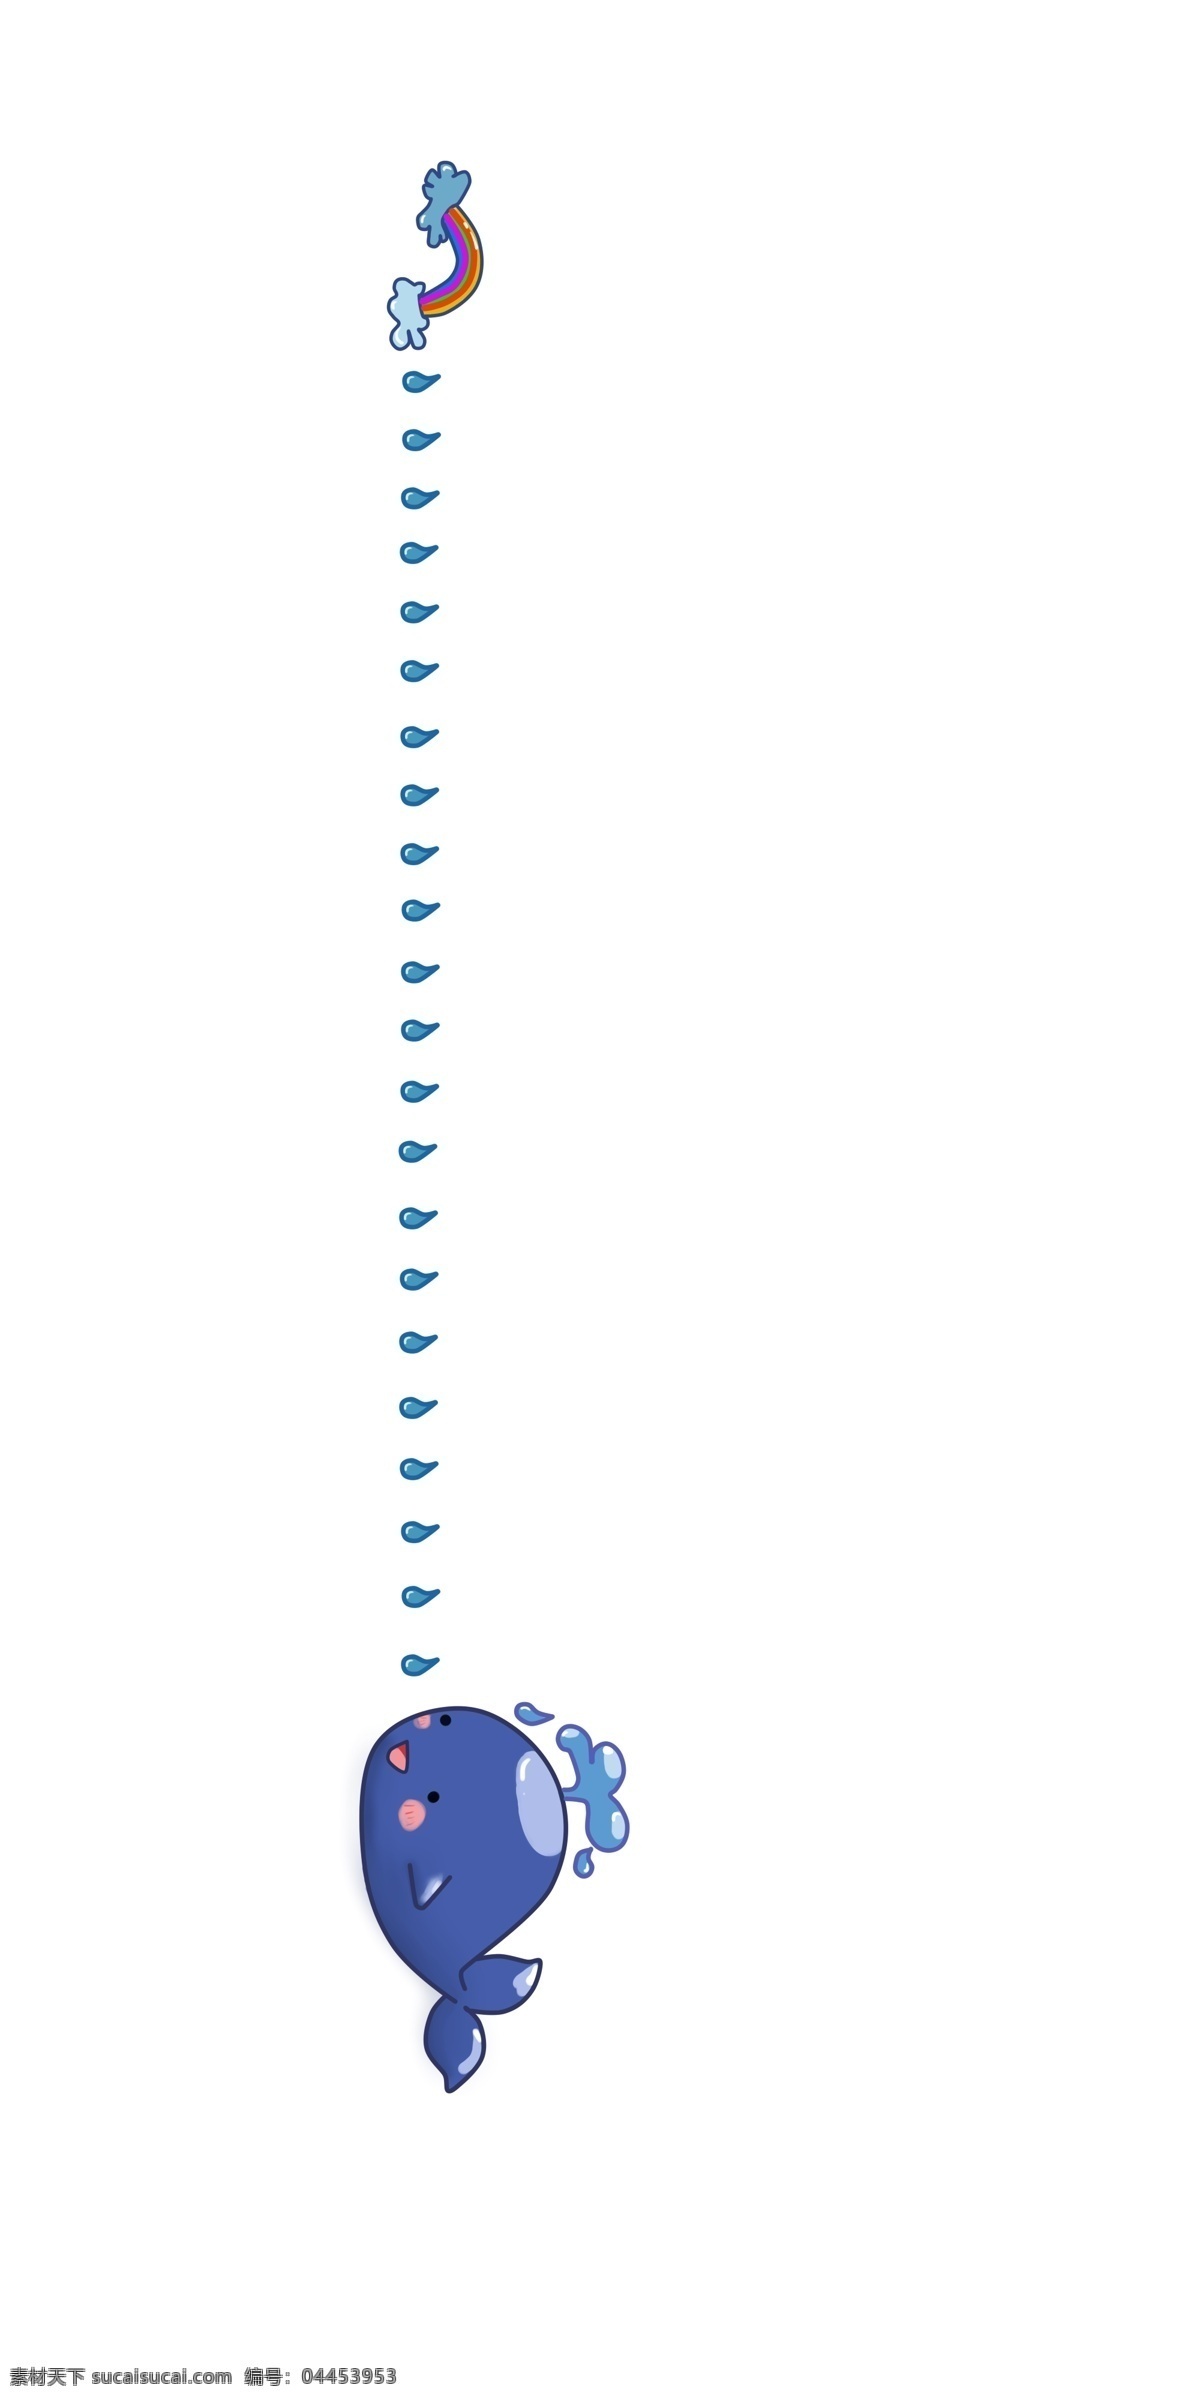 海豚 分割线 装饰 插画 蓝色的分割线 海豚分割线 创意分割线 立体分割线 手绘分割线 卡通分割线